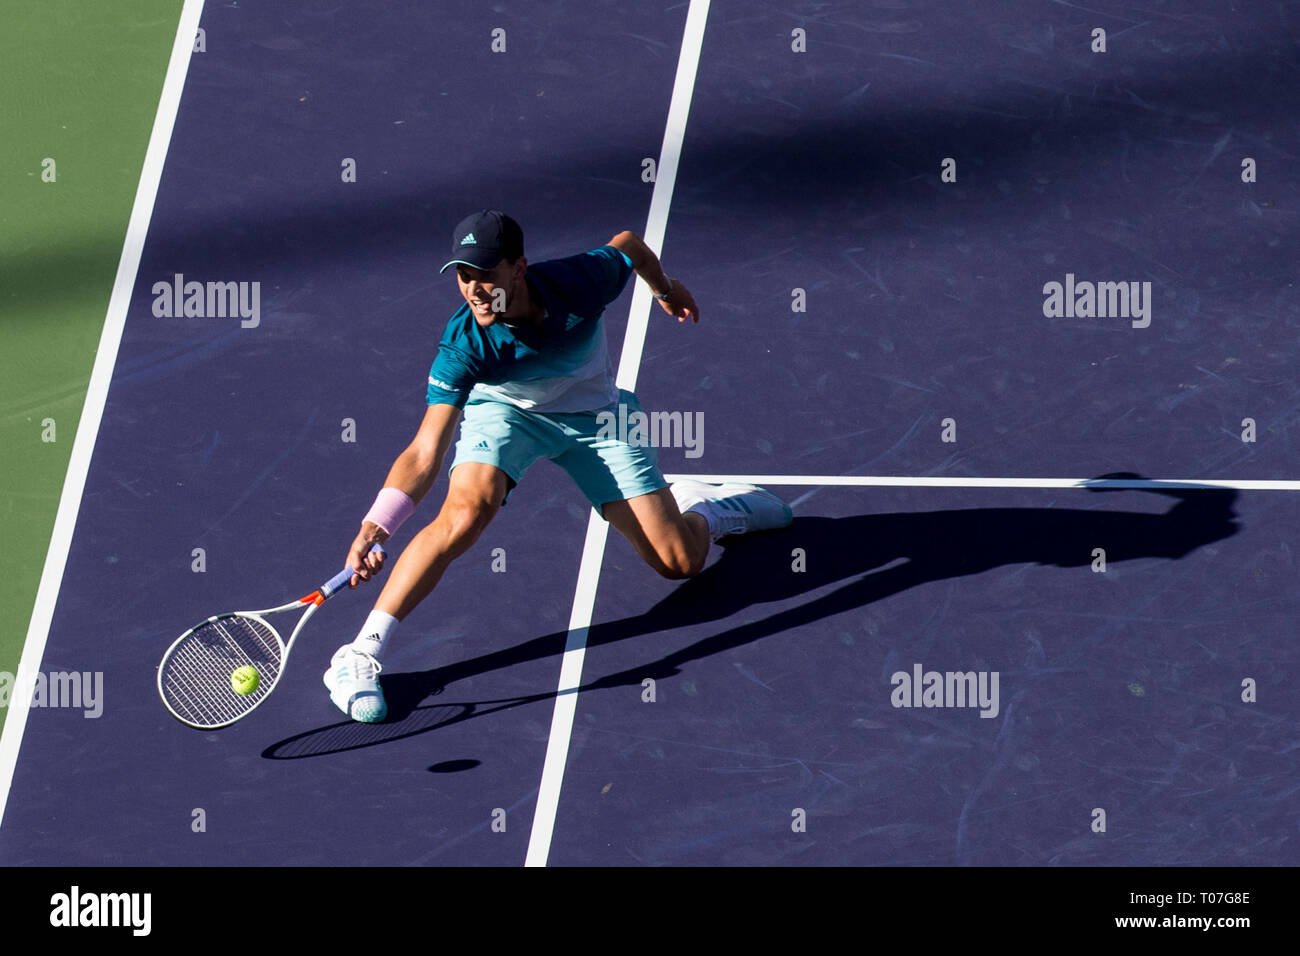 Marzo 17, 2019: Dominic Thiem (AUT) in azione dove egli ha sconfitto Roger Federer (SUI) 6-3, 3-6, 7-5 nella fase finale del BNP Paribas Open a Indian Wells Tennis Garden di Indian Wells, California. Â©Mal Taam/TennisClix/CSM Foto Stock